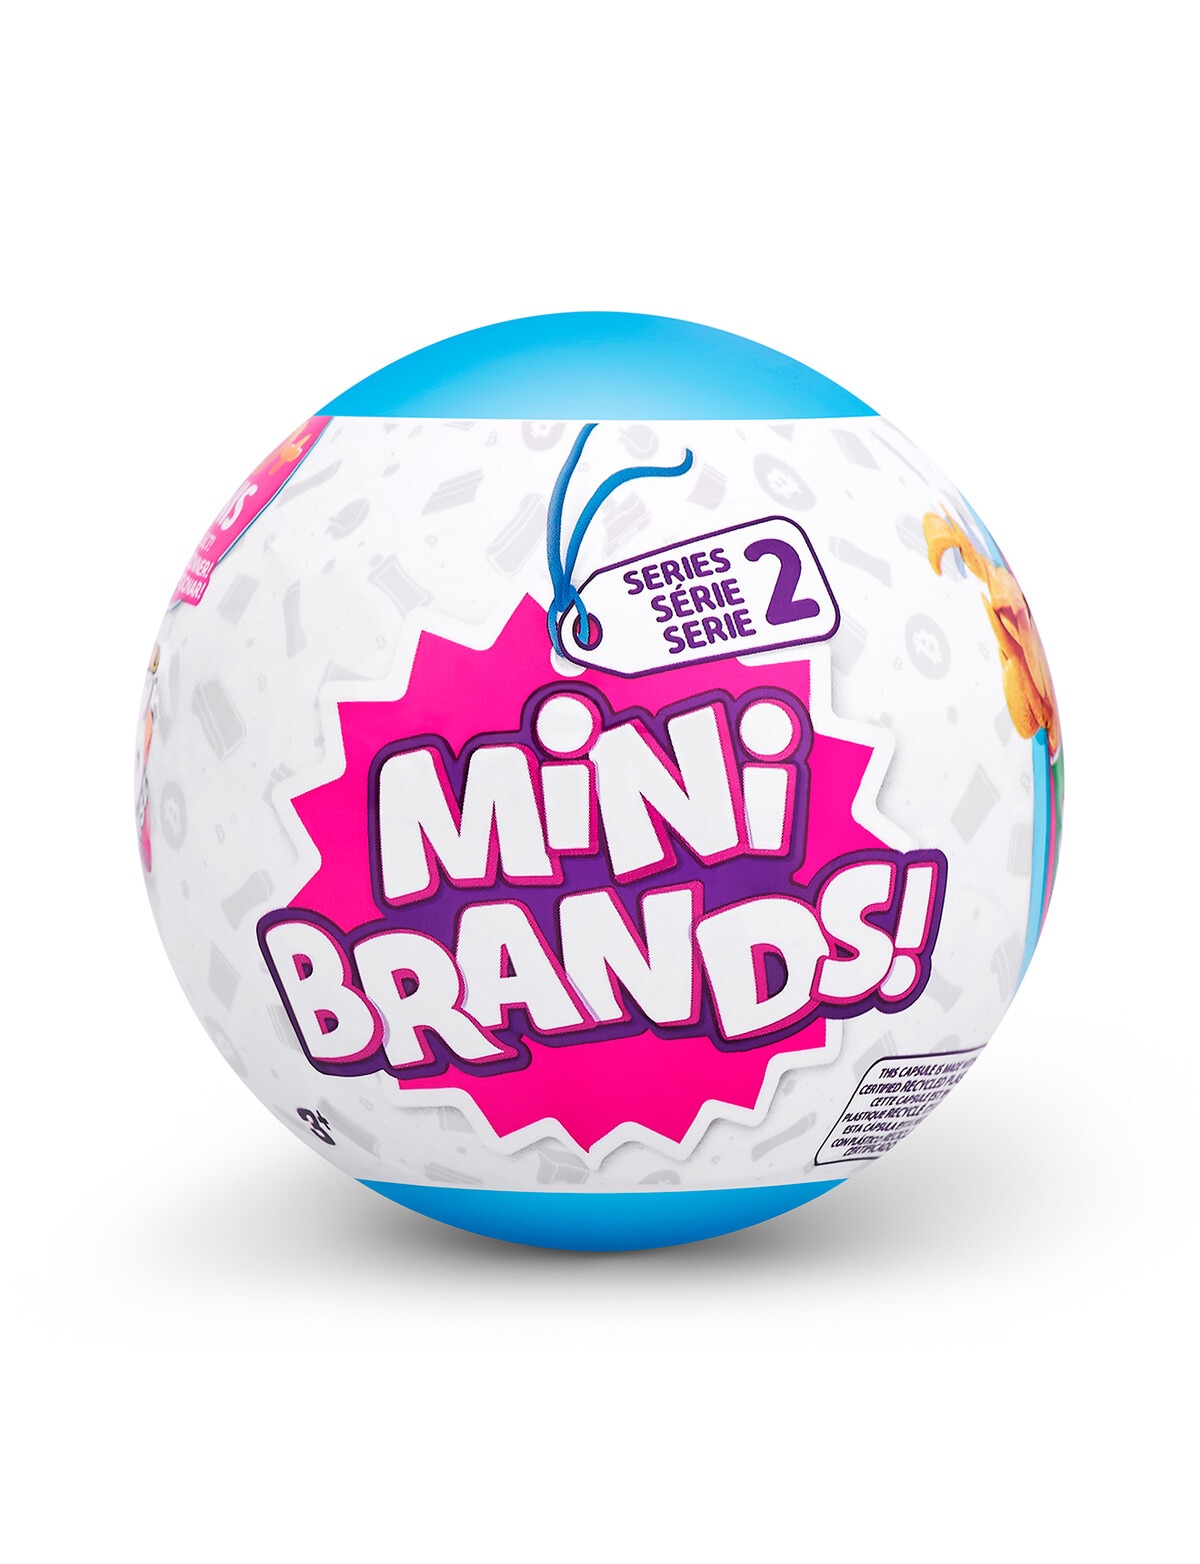 5 Surprise Mini Brands Capsule Series 2